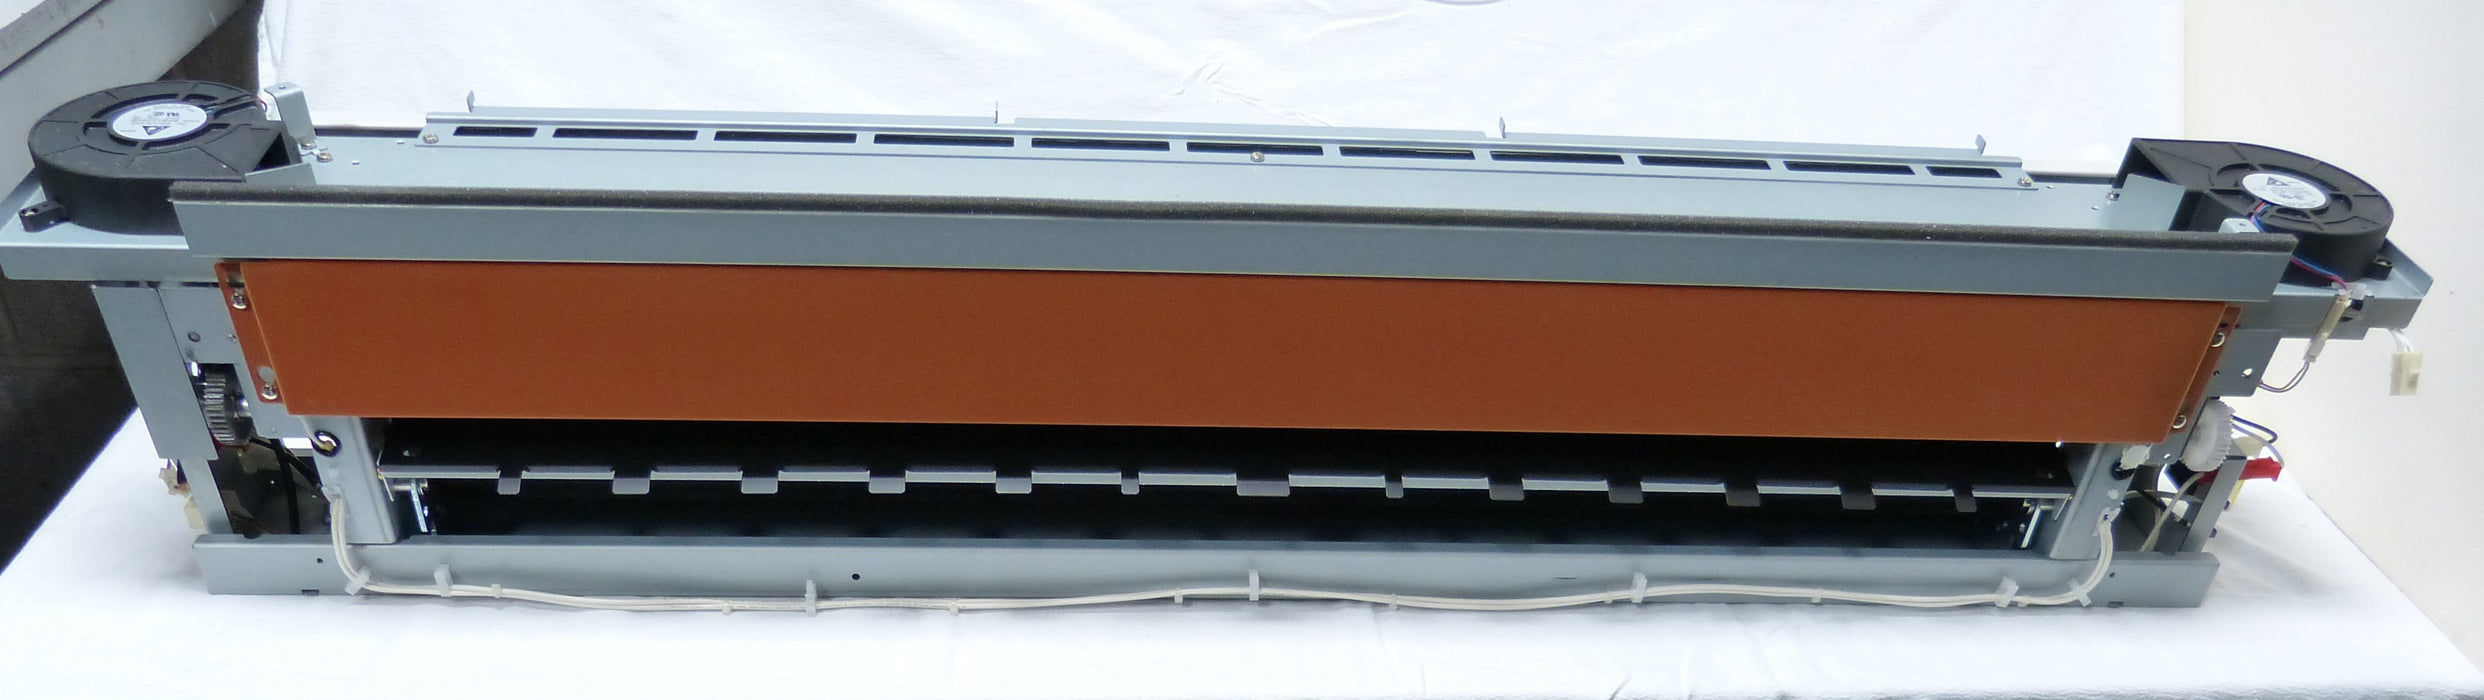 Genuine KIP Z1504490020 Fuser Assembly for use in KIP 9000, 8000, Xerox 6622